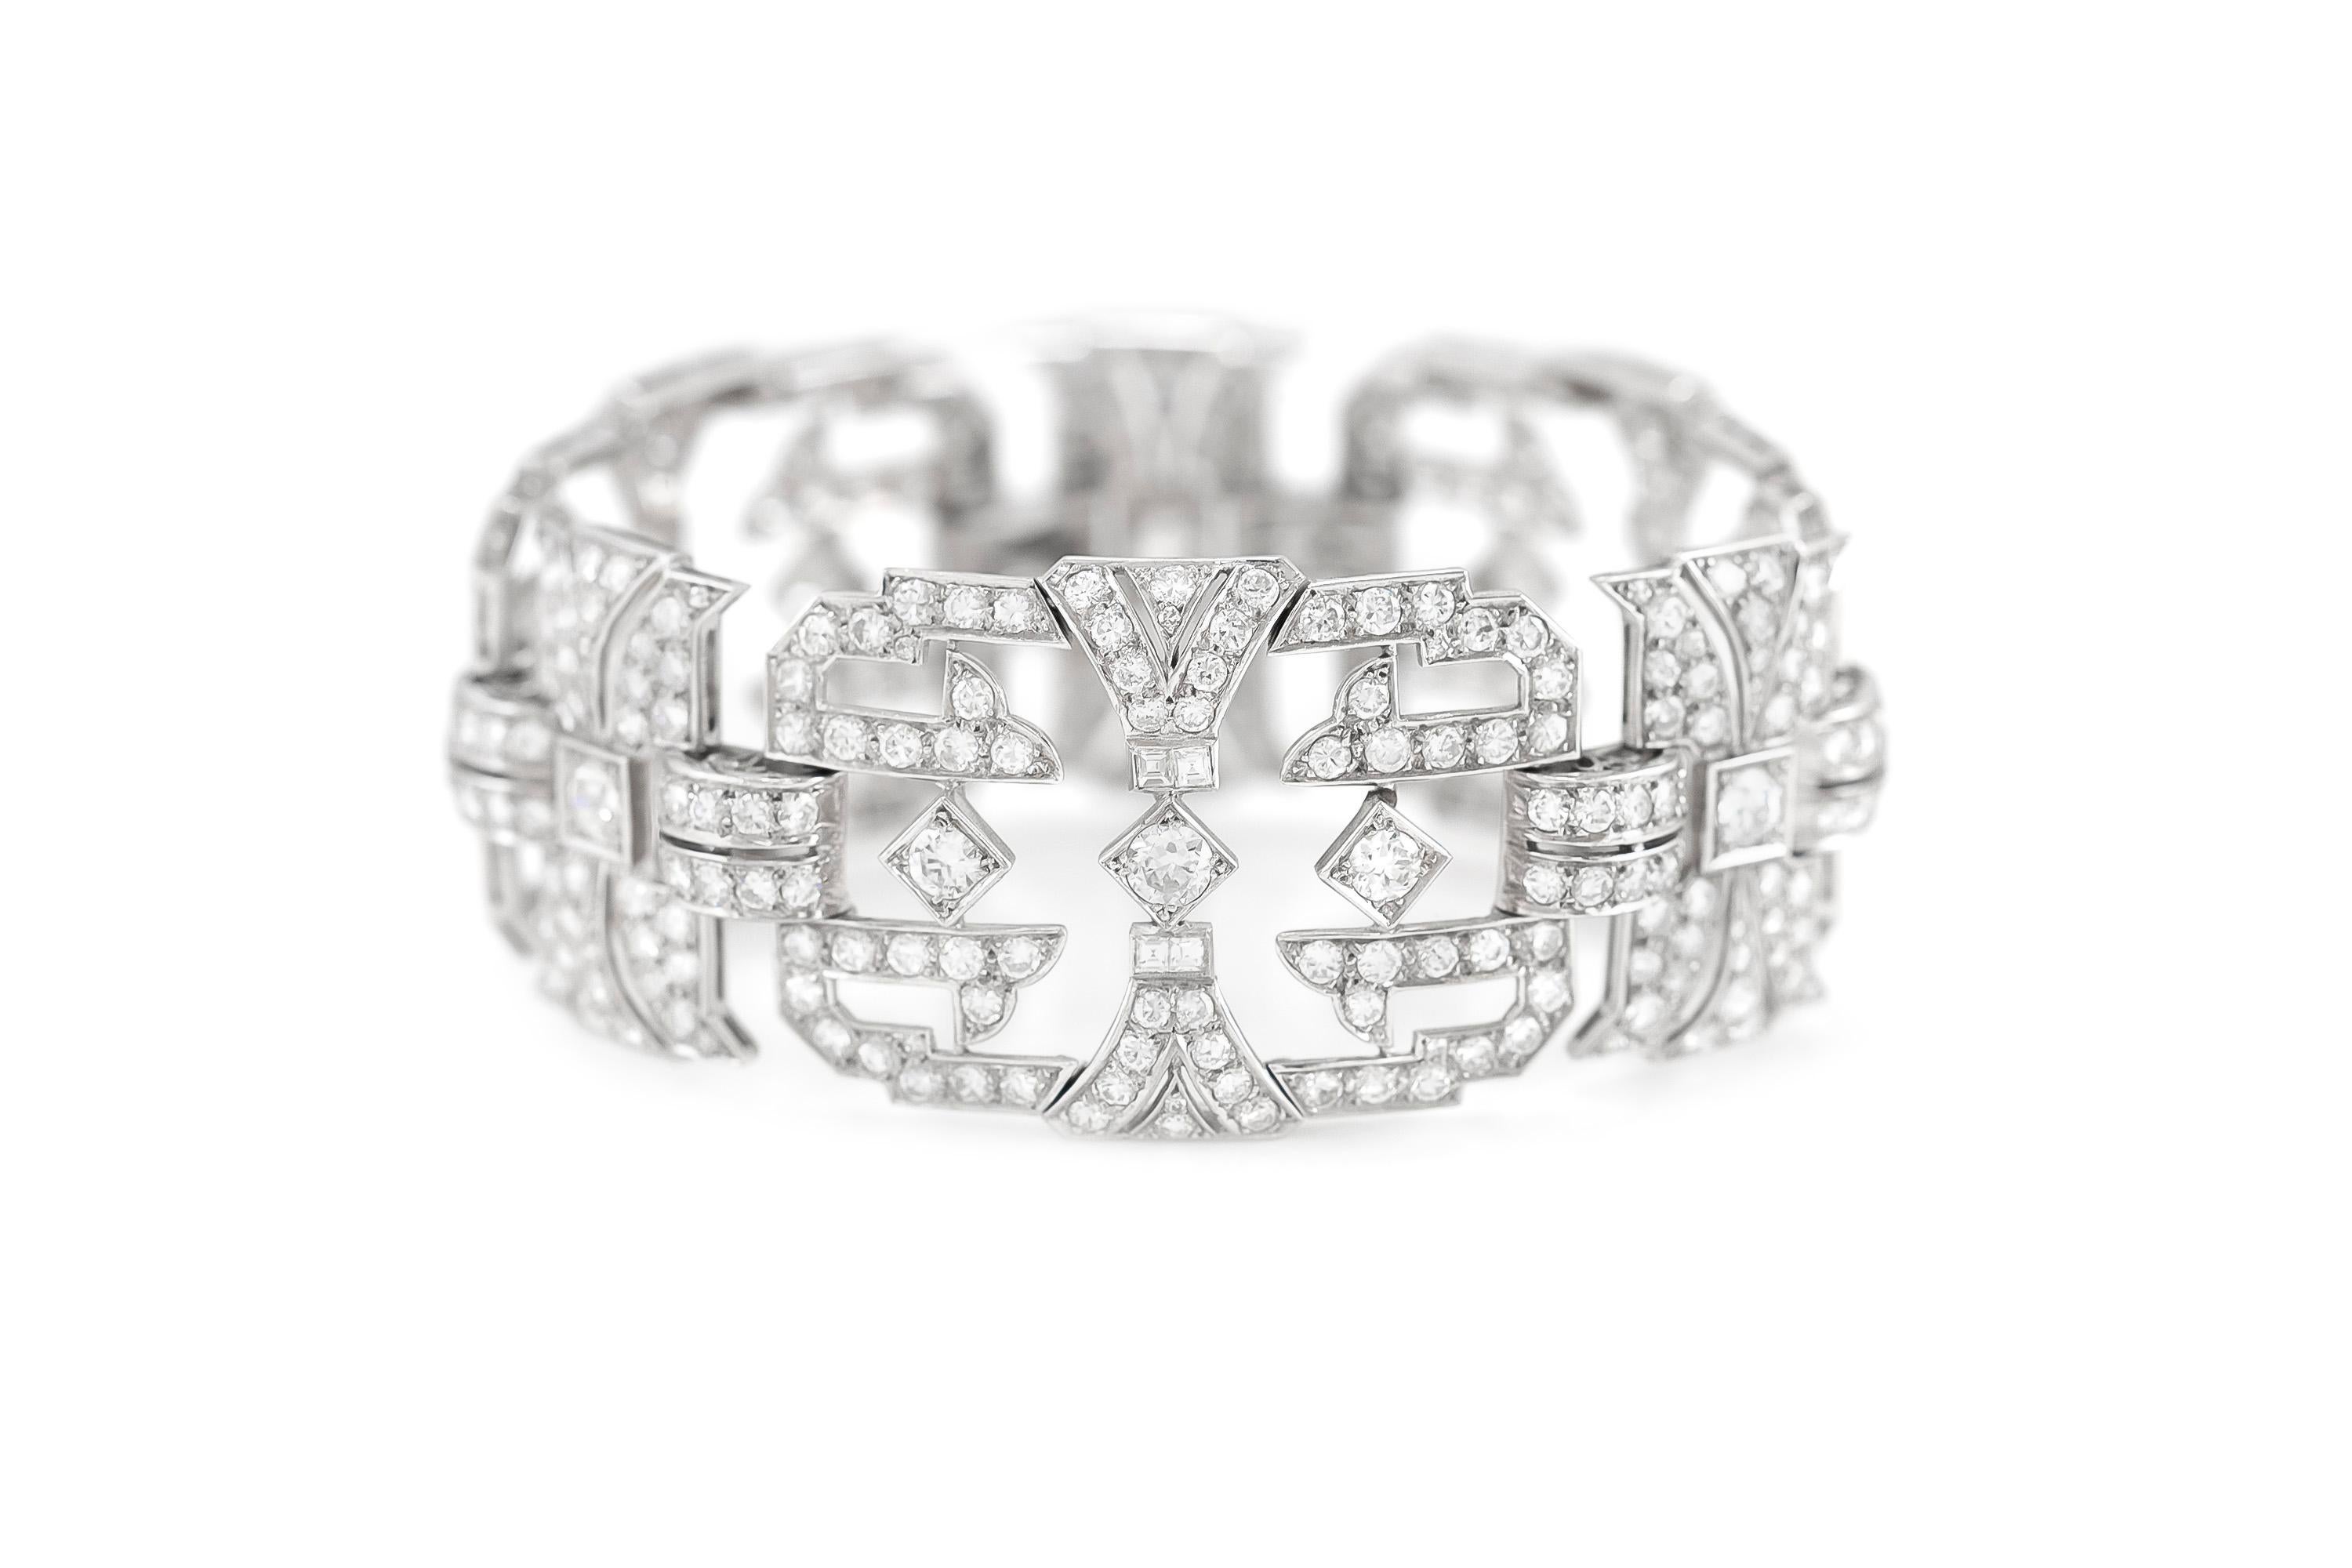 Das schöne Armband ist fein in Platin mit schönen Diamanten in verschiedenen Schliff mit einem Gesamtgewicht von etwa 32,00 Karat gefertigt.
Um 1920